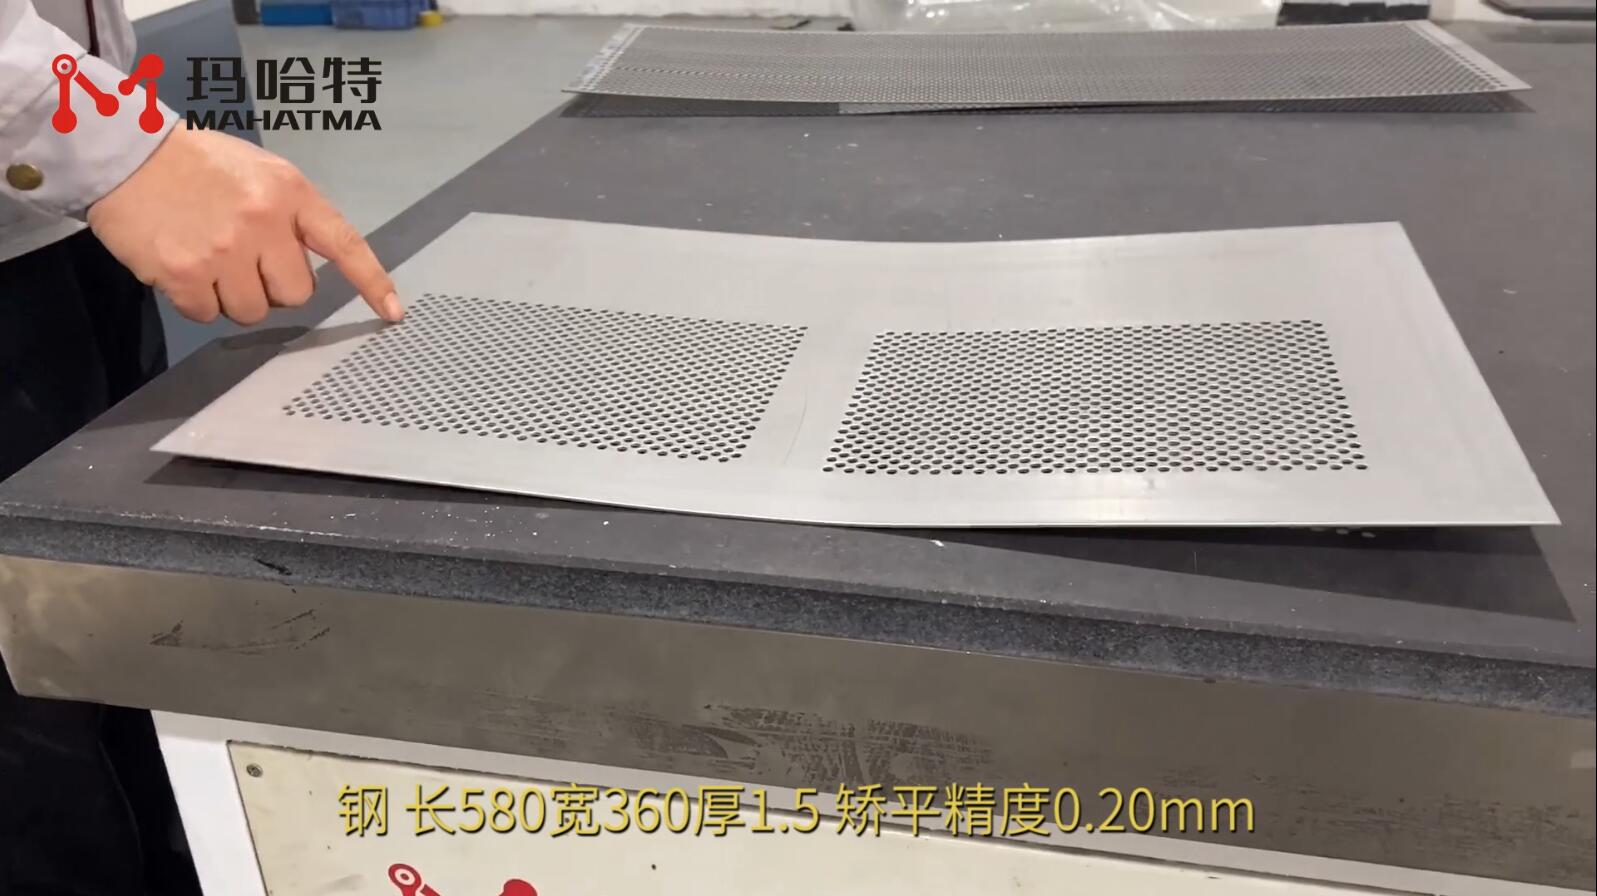 钢网板 MHT50-1300 长方形 长580宽360厚1.5 矫平精度0.20mm